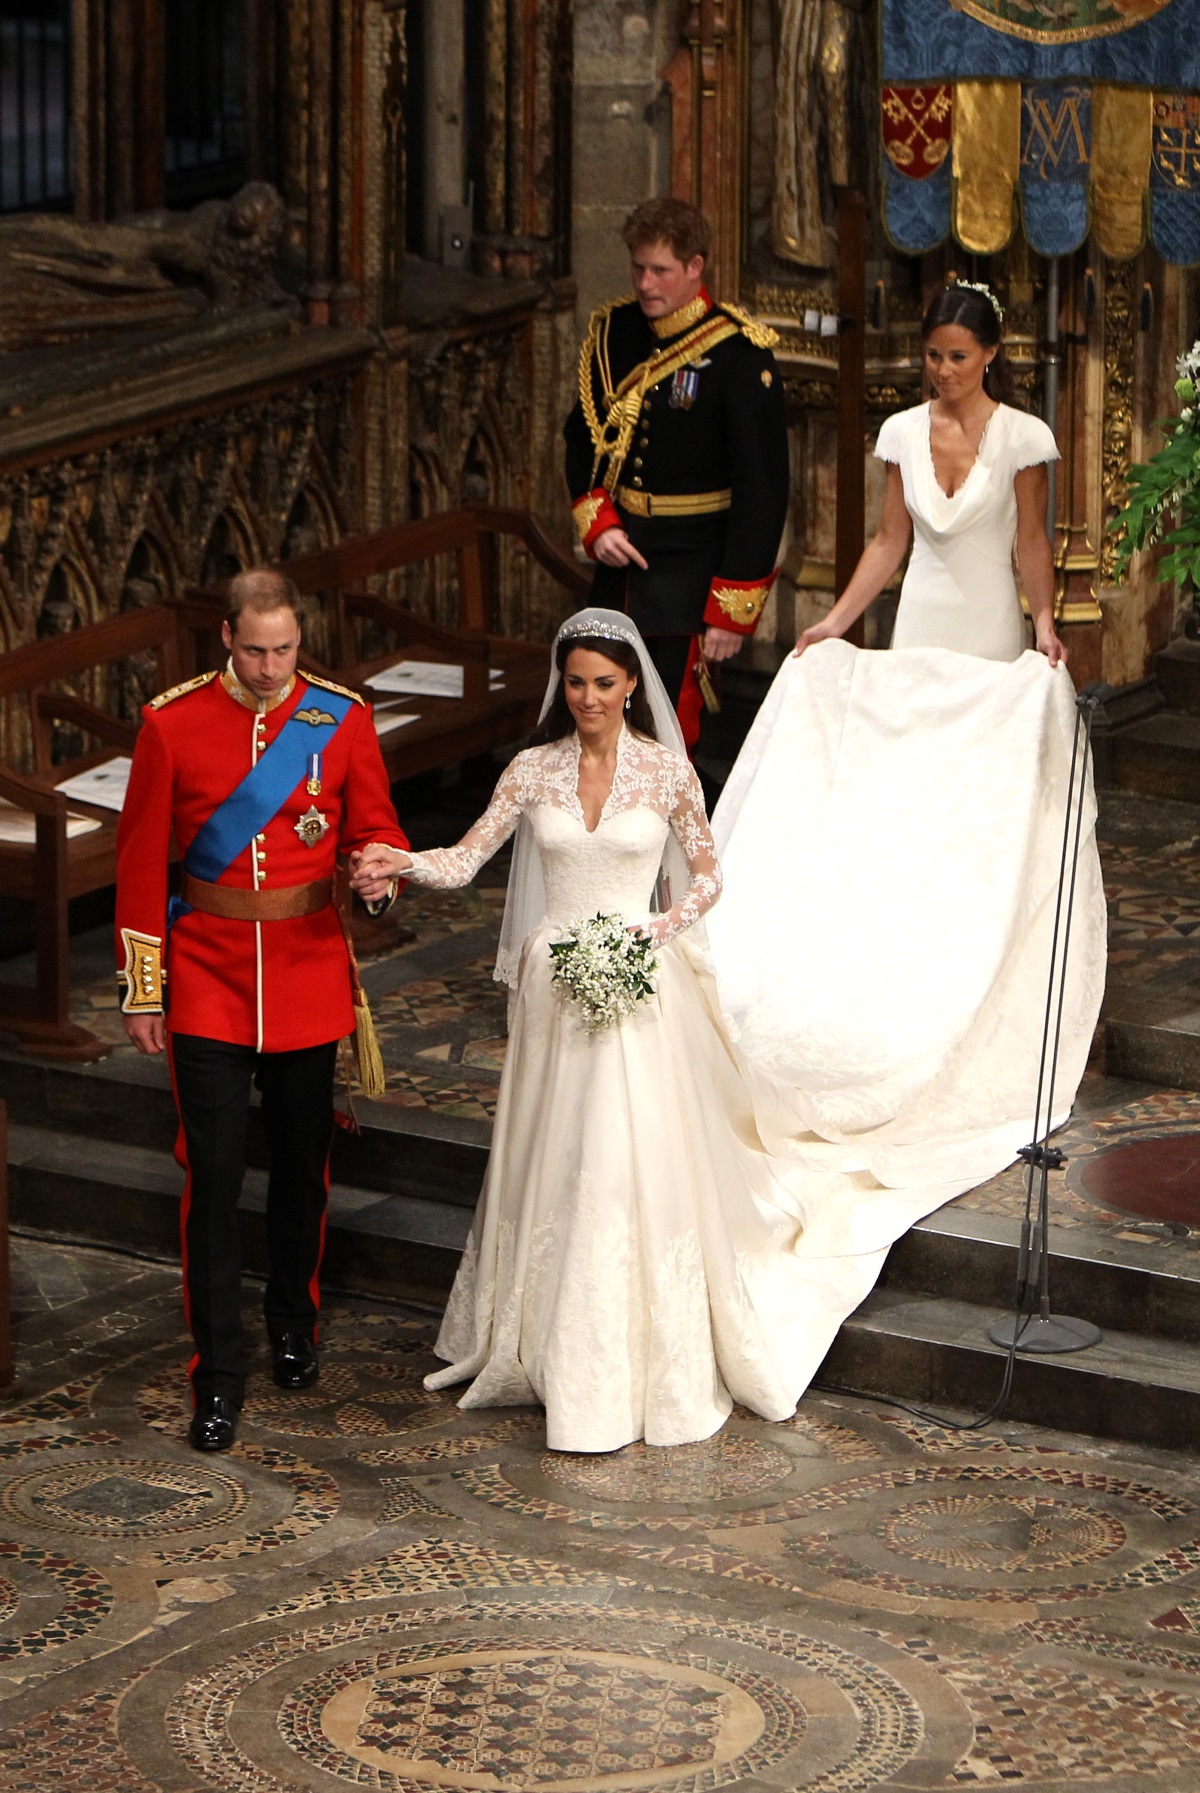 Кейт и Уилям се врекоха във вярност на 29 април 2011 г.<br />
Само за цветята на тържеството си двойката е похарчила 800 хил. долара, а Кейт изглеждаше ослепително в рокля за 434 хил. долара.